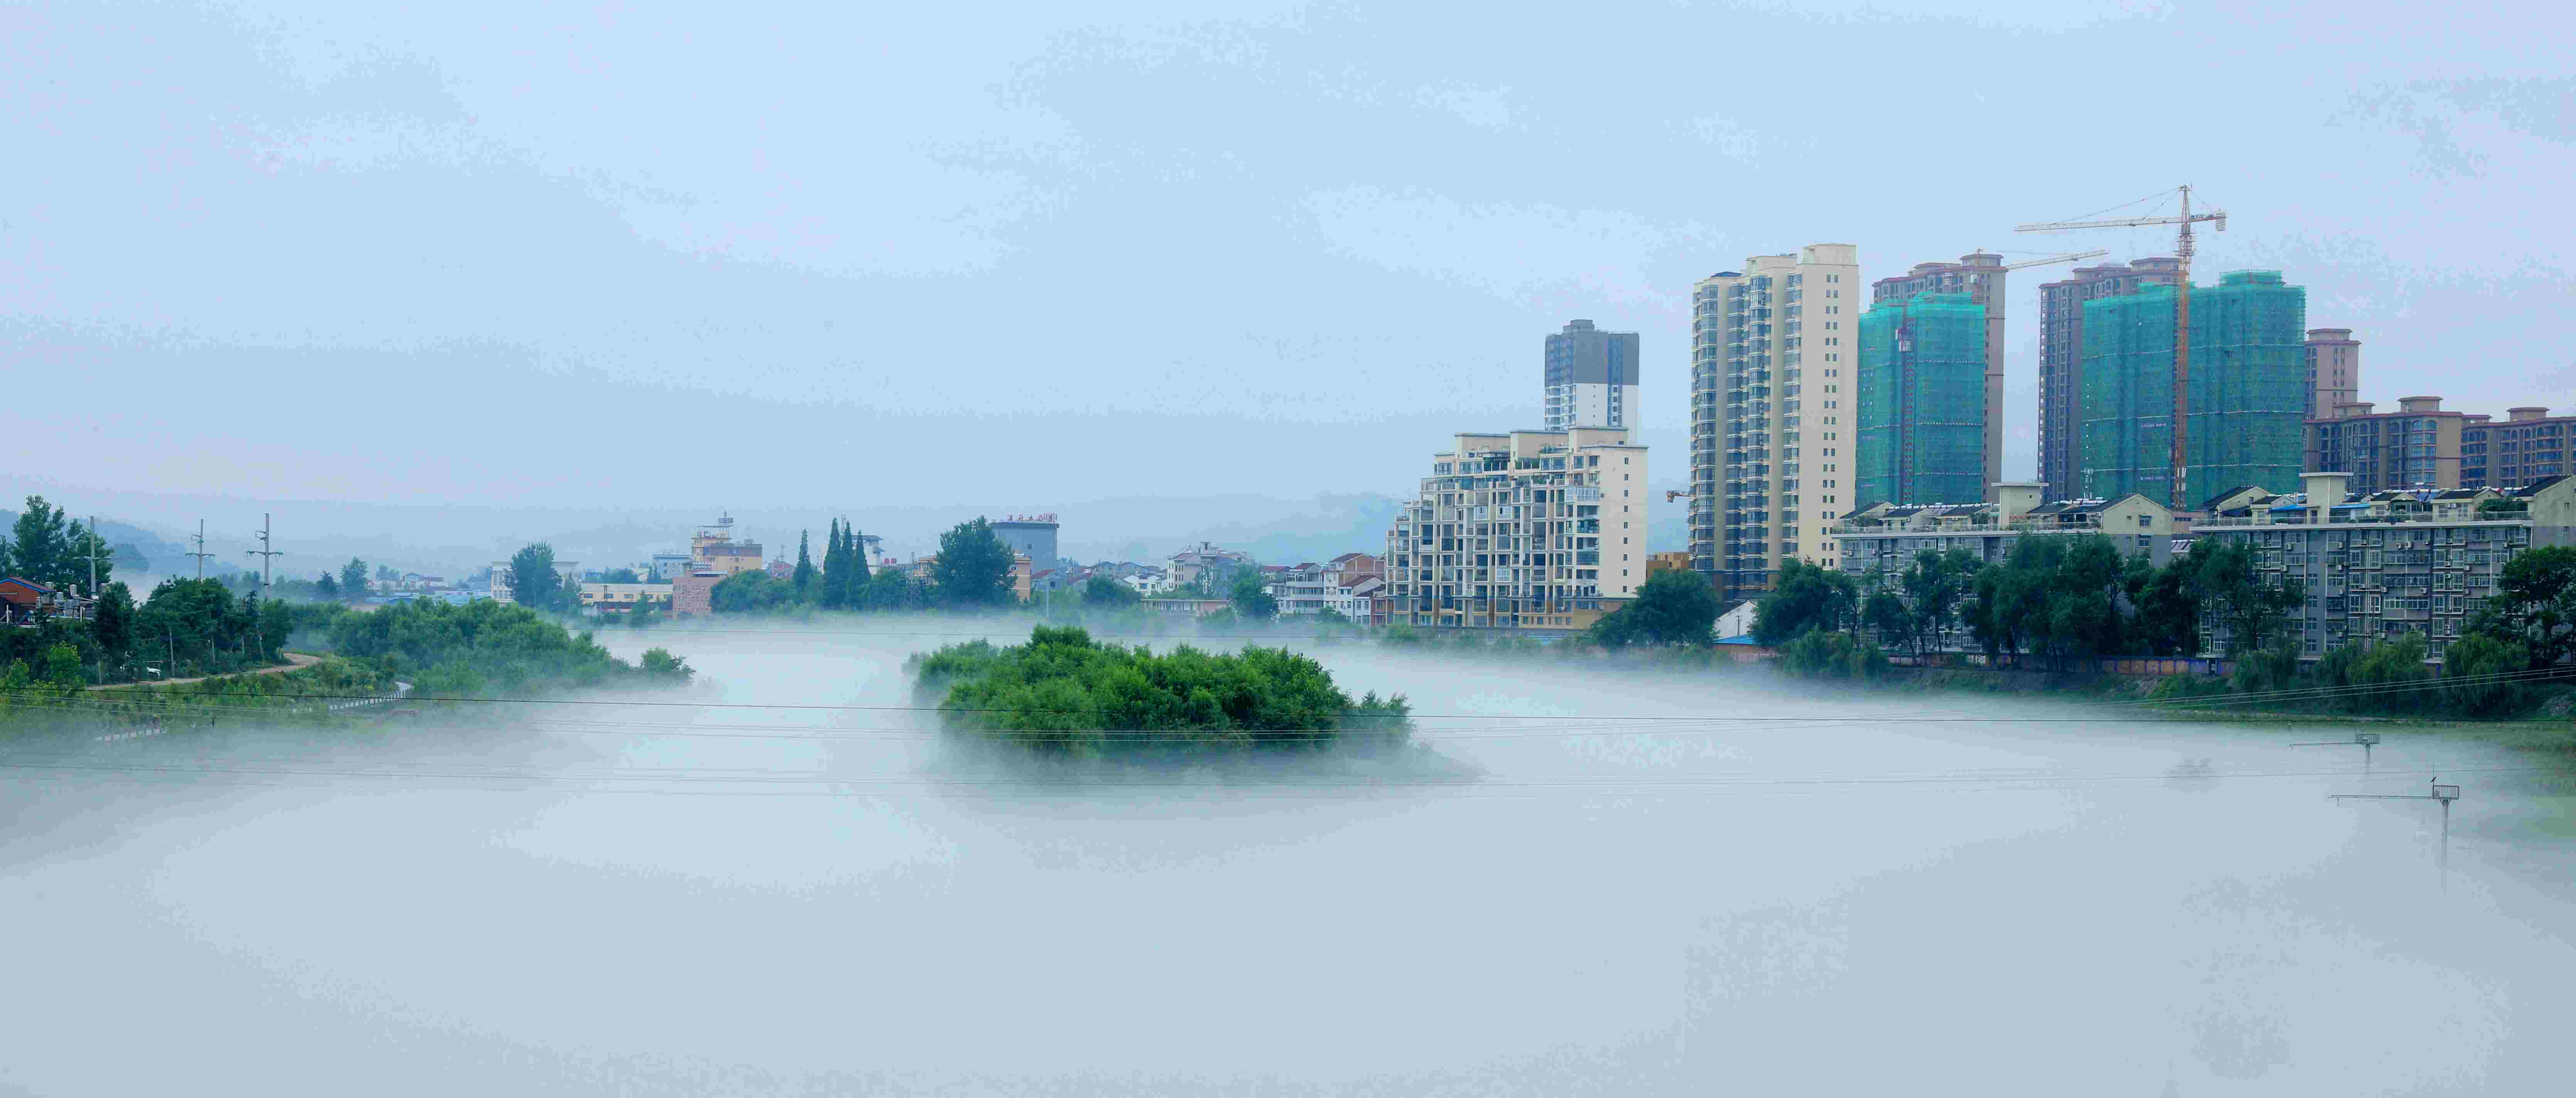 视觉中的汉中西乡,雨后牧马河雾气缭绕宛如仙境